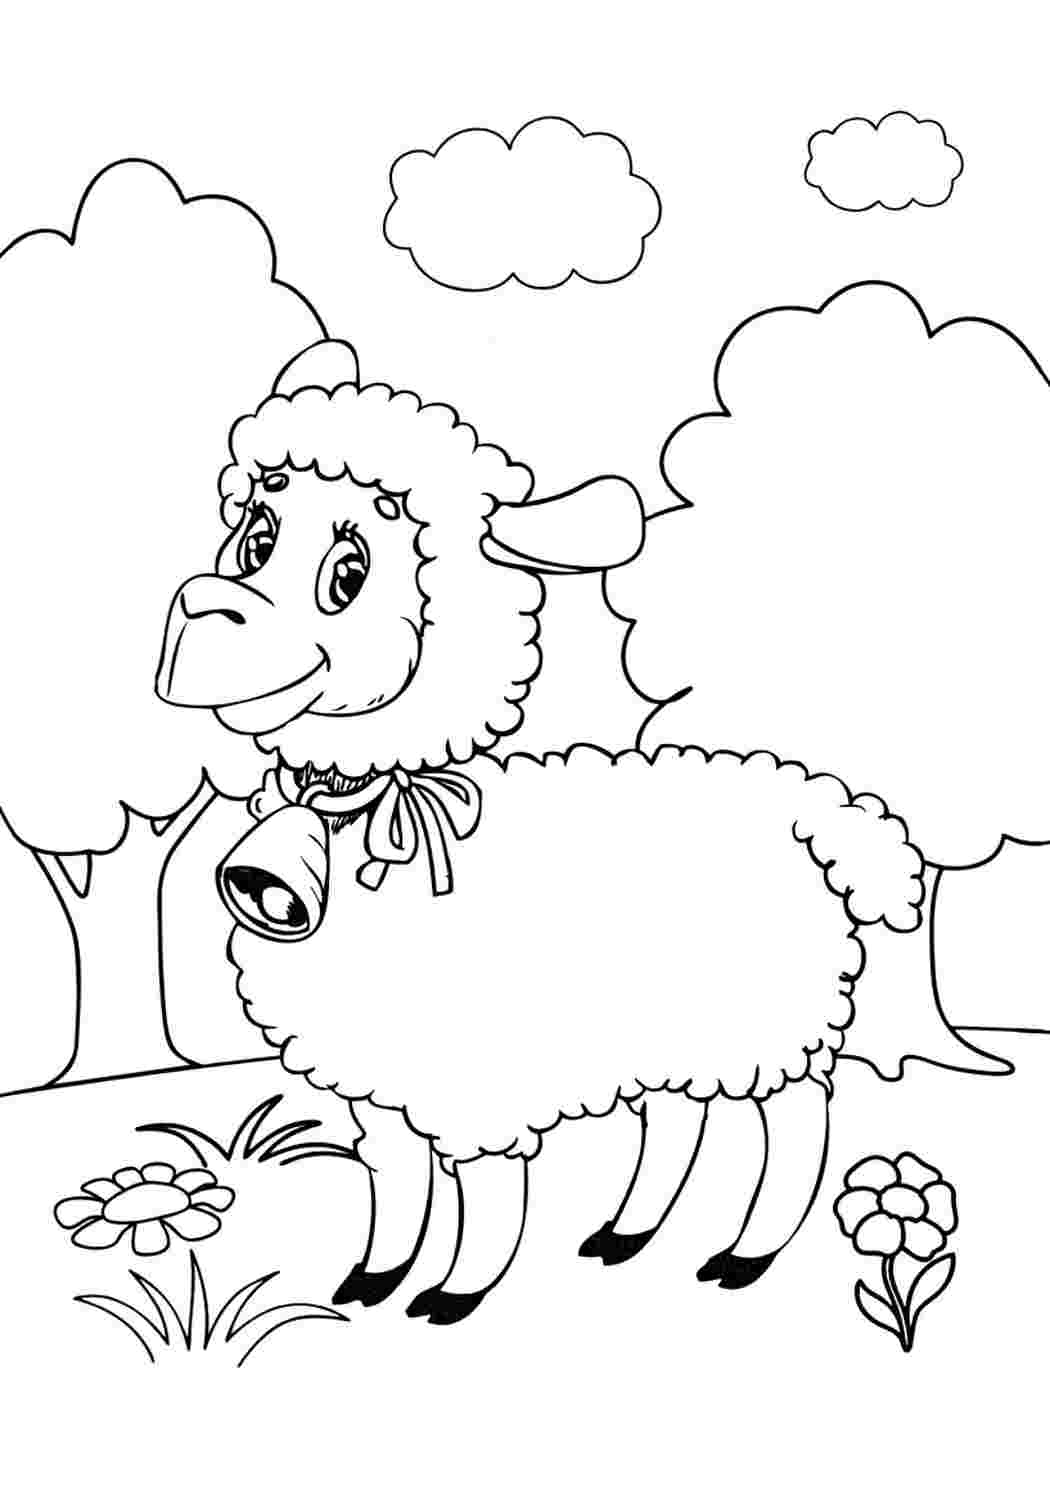 Раскраски животные овечки. Скачать раскраски бесплатно. животные овечки. Распечатать раскраски на сайте.